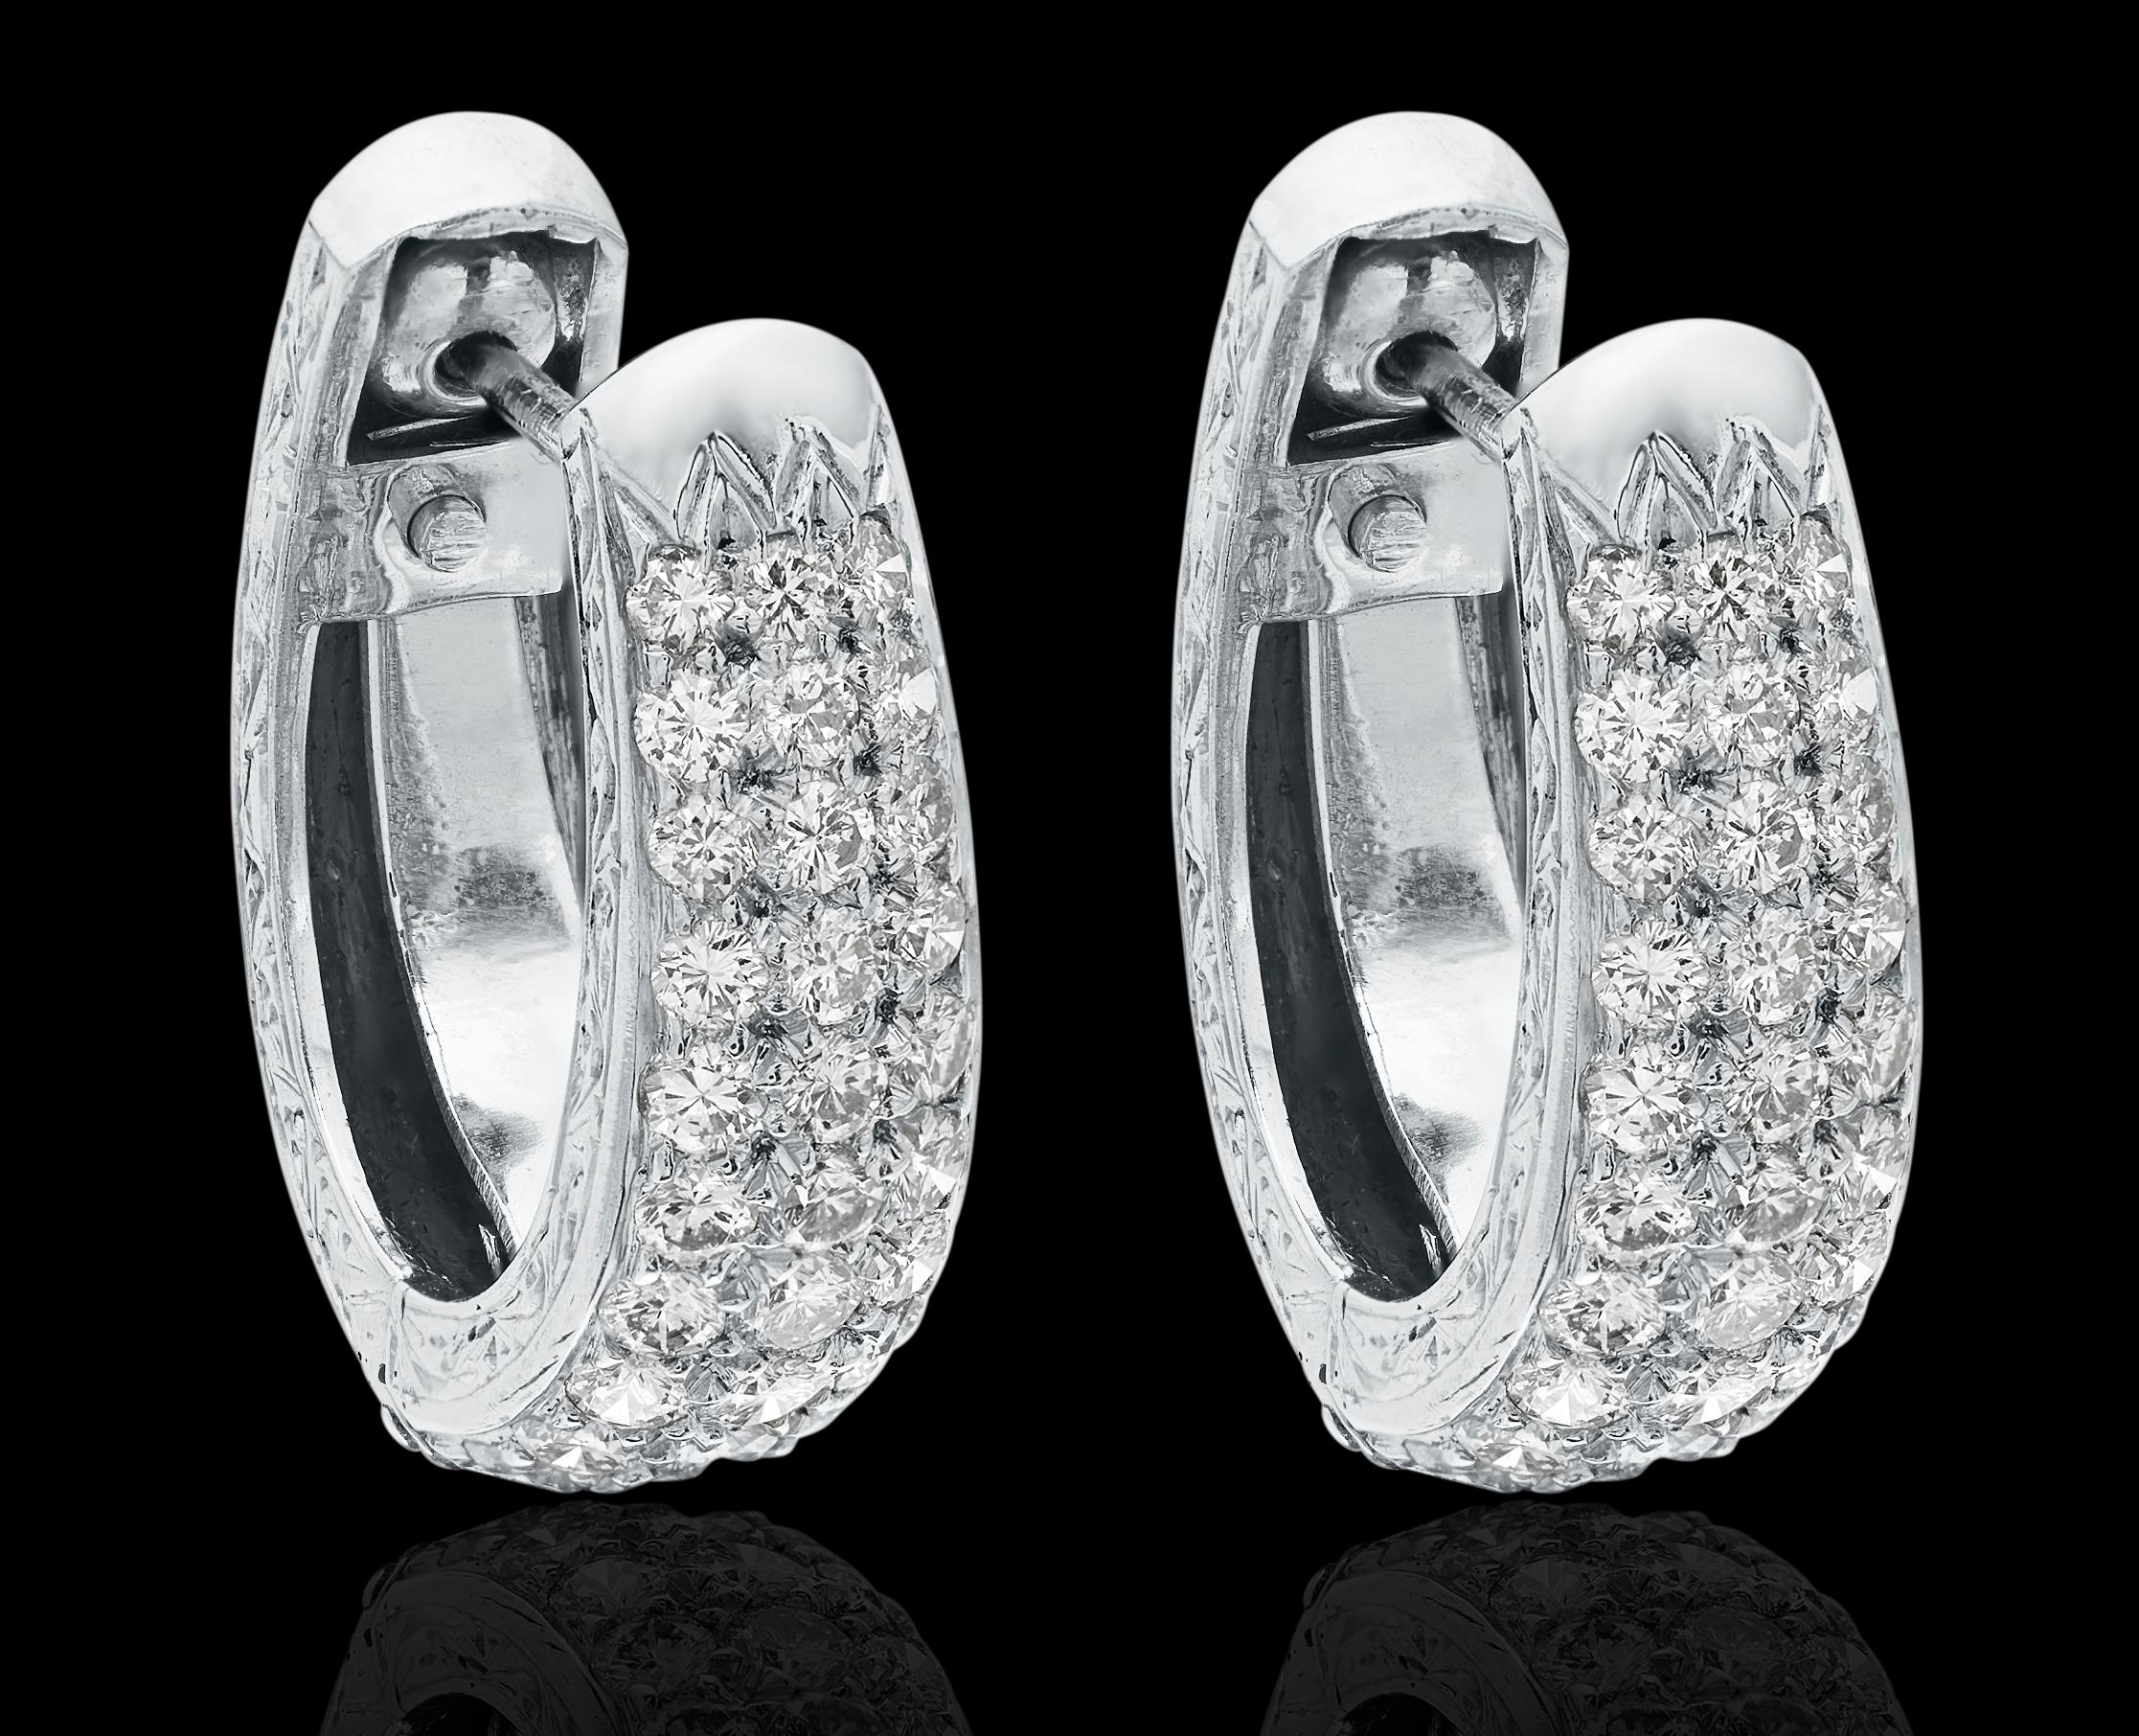 Ein Paar diamantene Ohrringe in leicht zu tragender Fassung, dezent und auffällig. Die Vorderseite der Ohrringe ist mit Diamanten besetzt, während die hintere Hälfte mit atemberaubenden Mustern aus Blättern und Wirbeln verziert ist.

Runde Diamanten